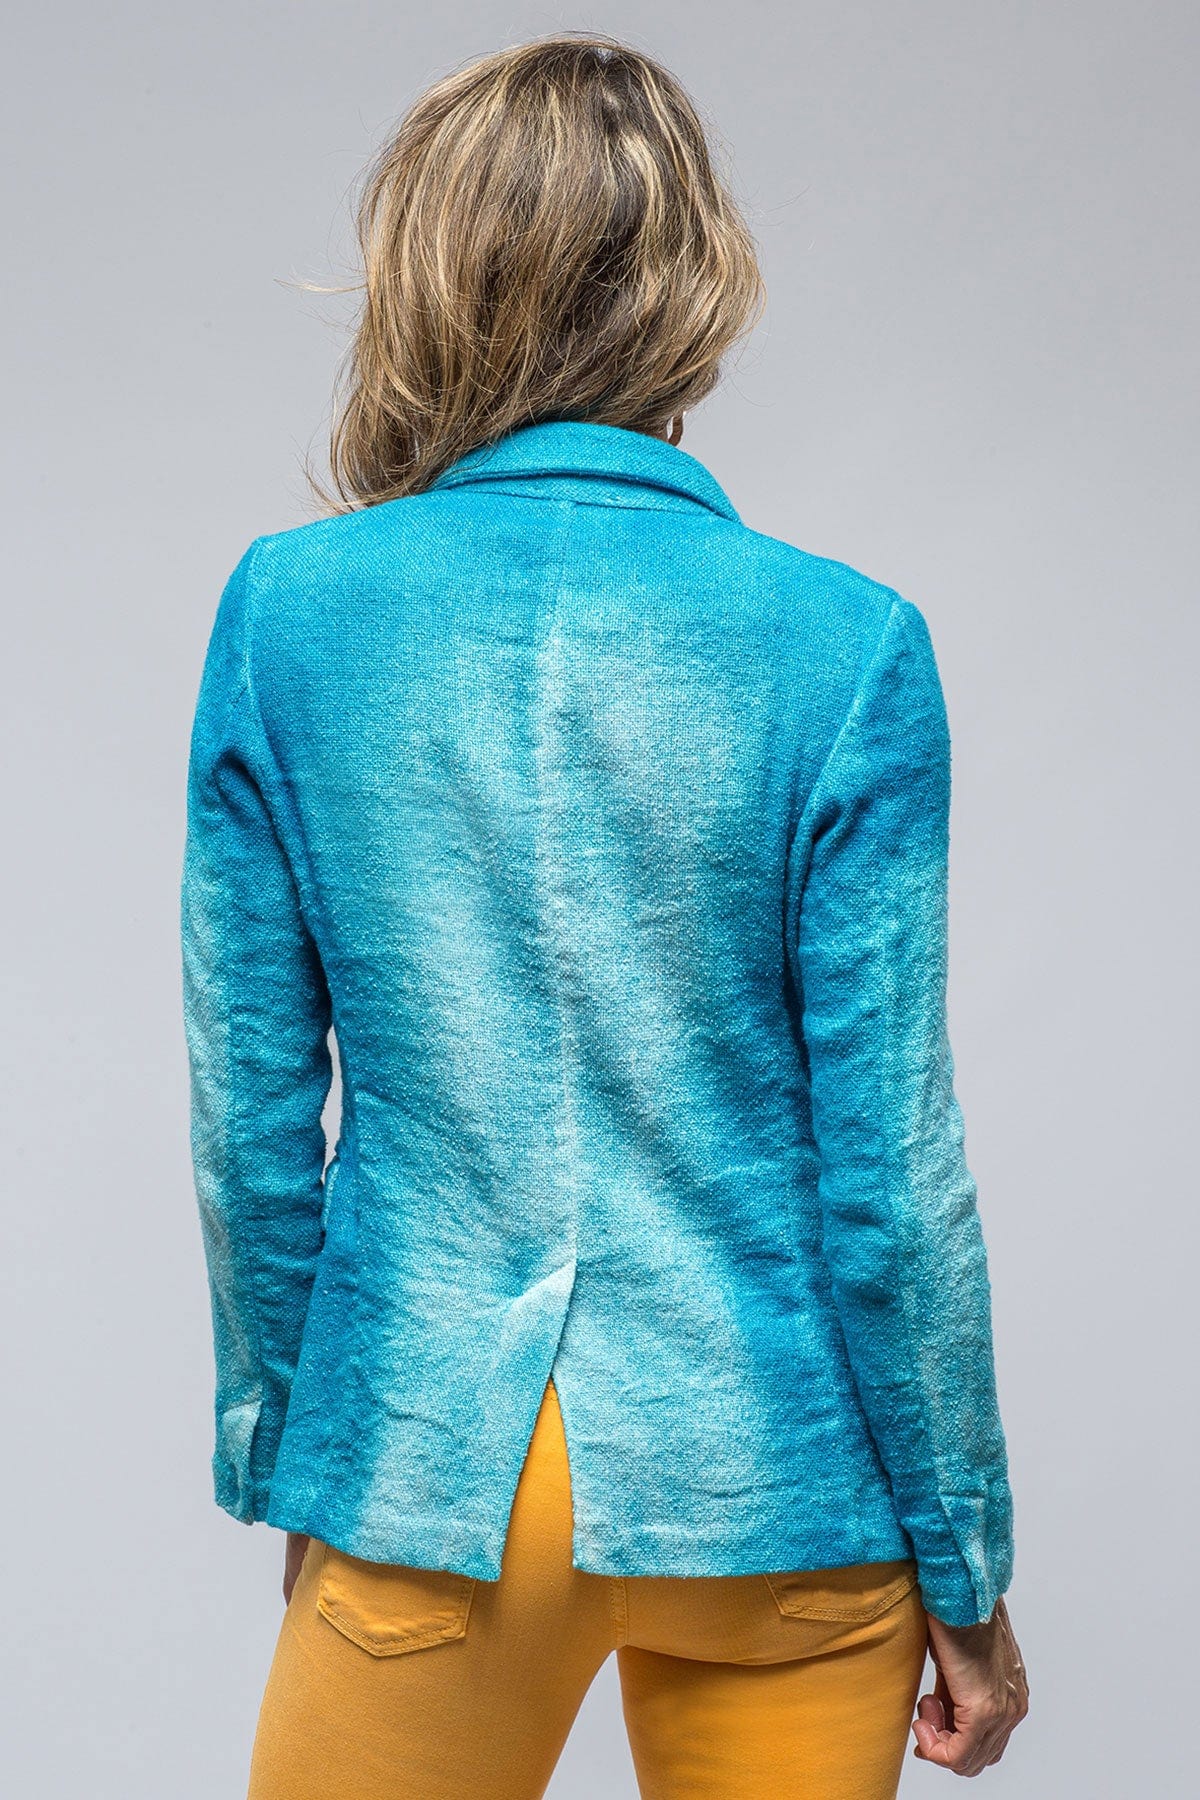 Boden velvet blazer - Coats & jackets